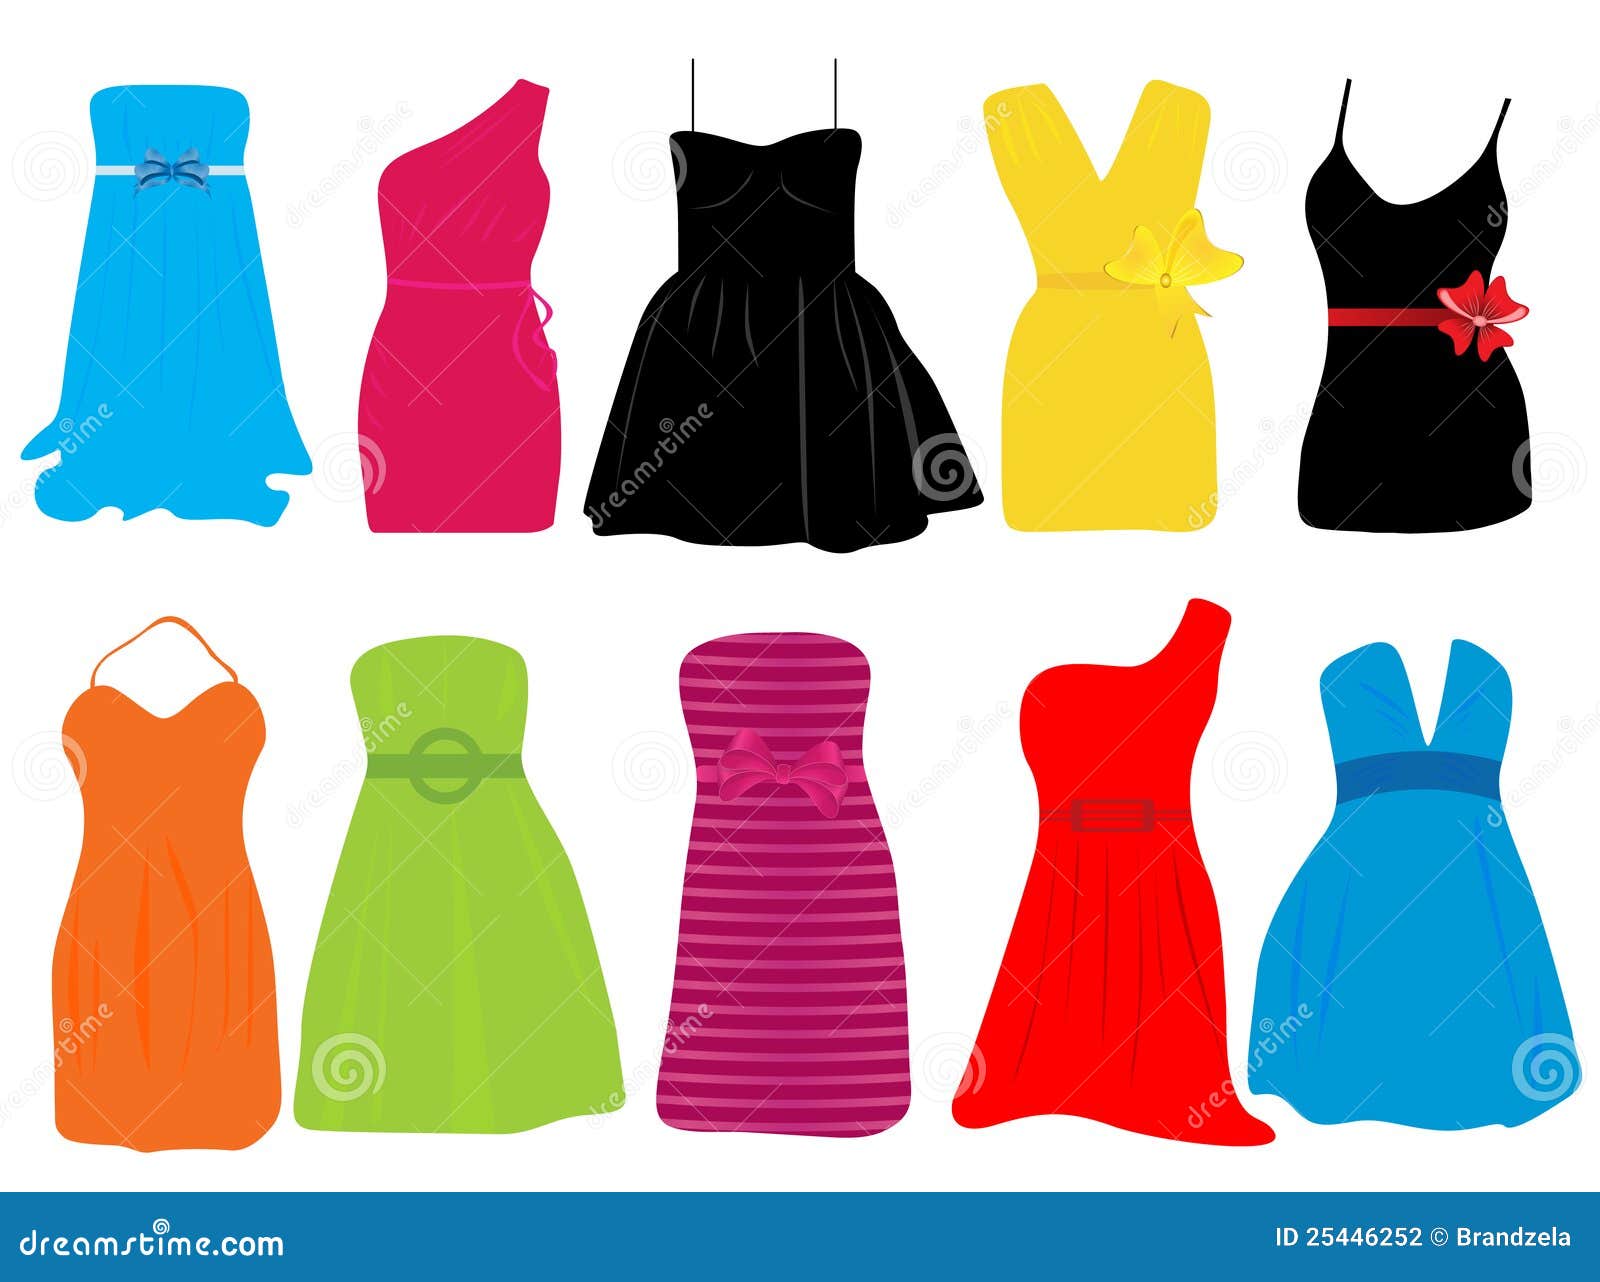 Summer dresses for women stock vector. Illustration of female - 25446252